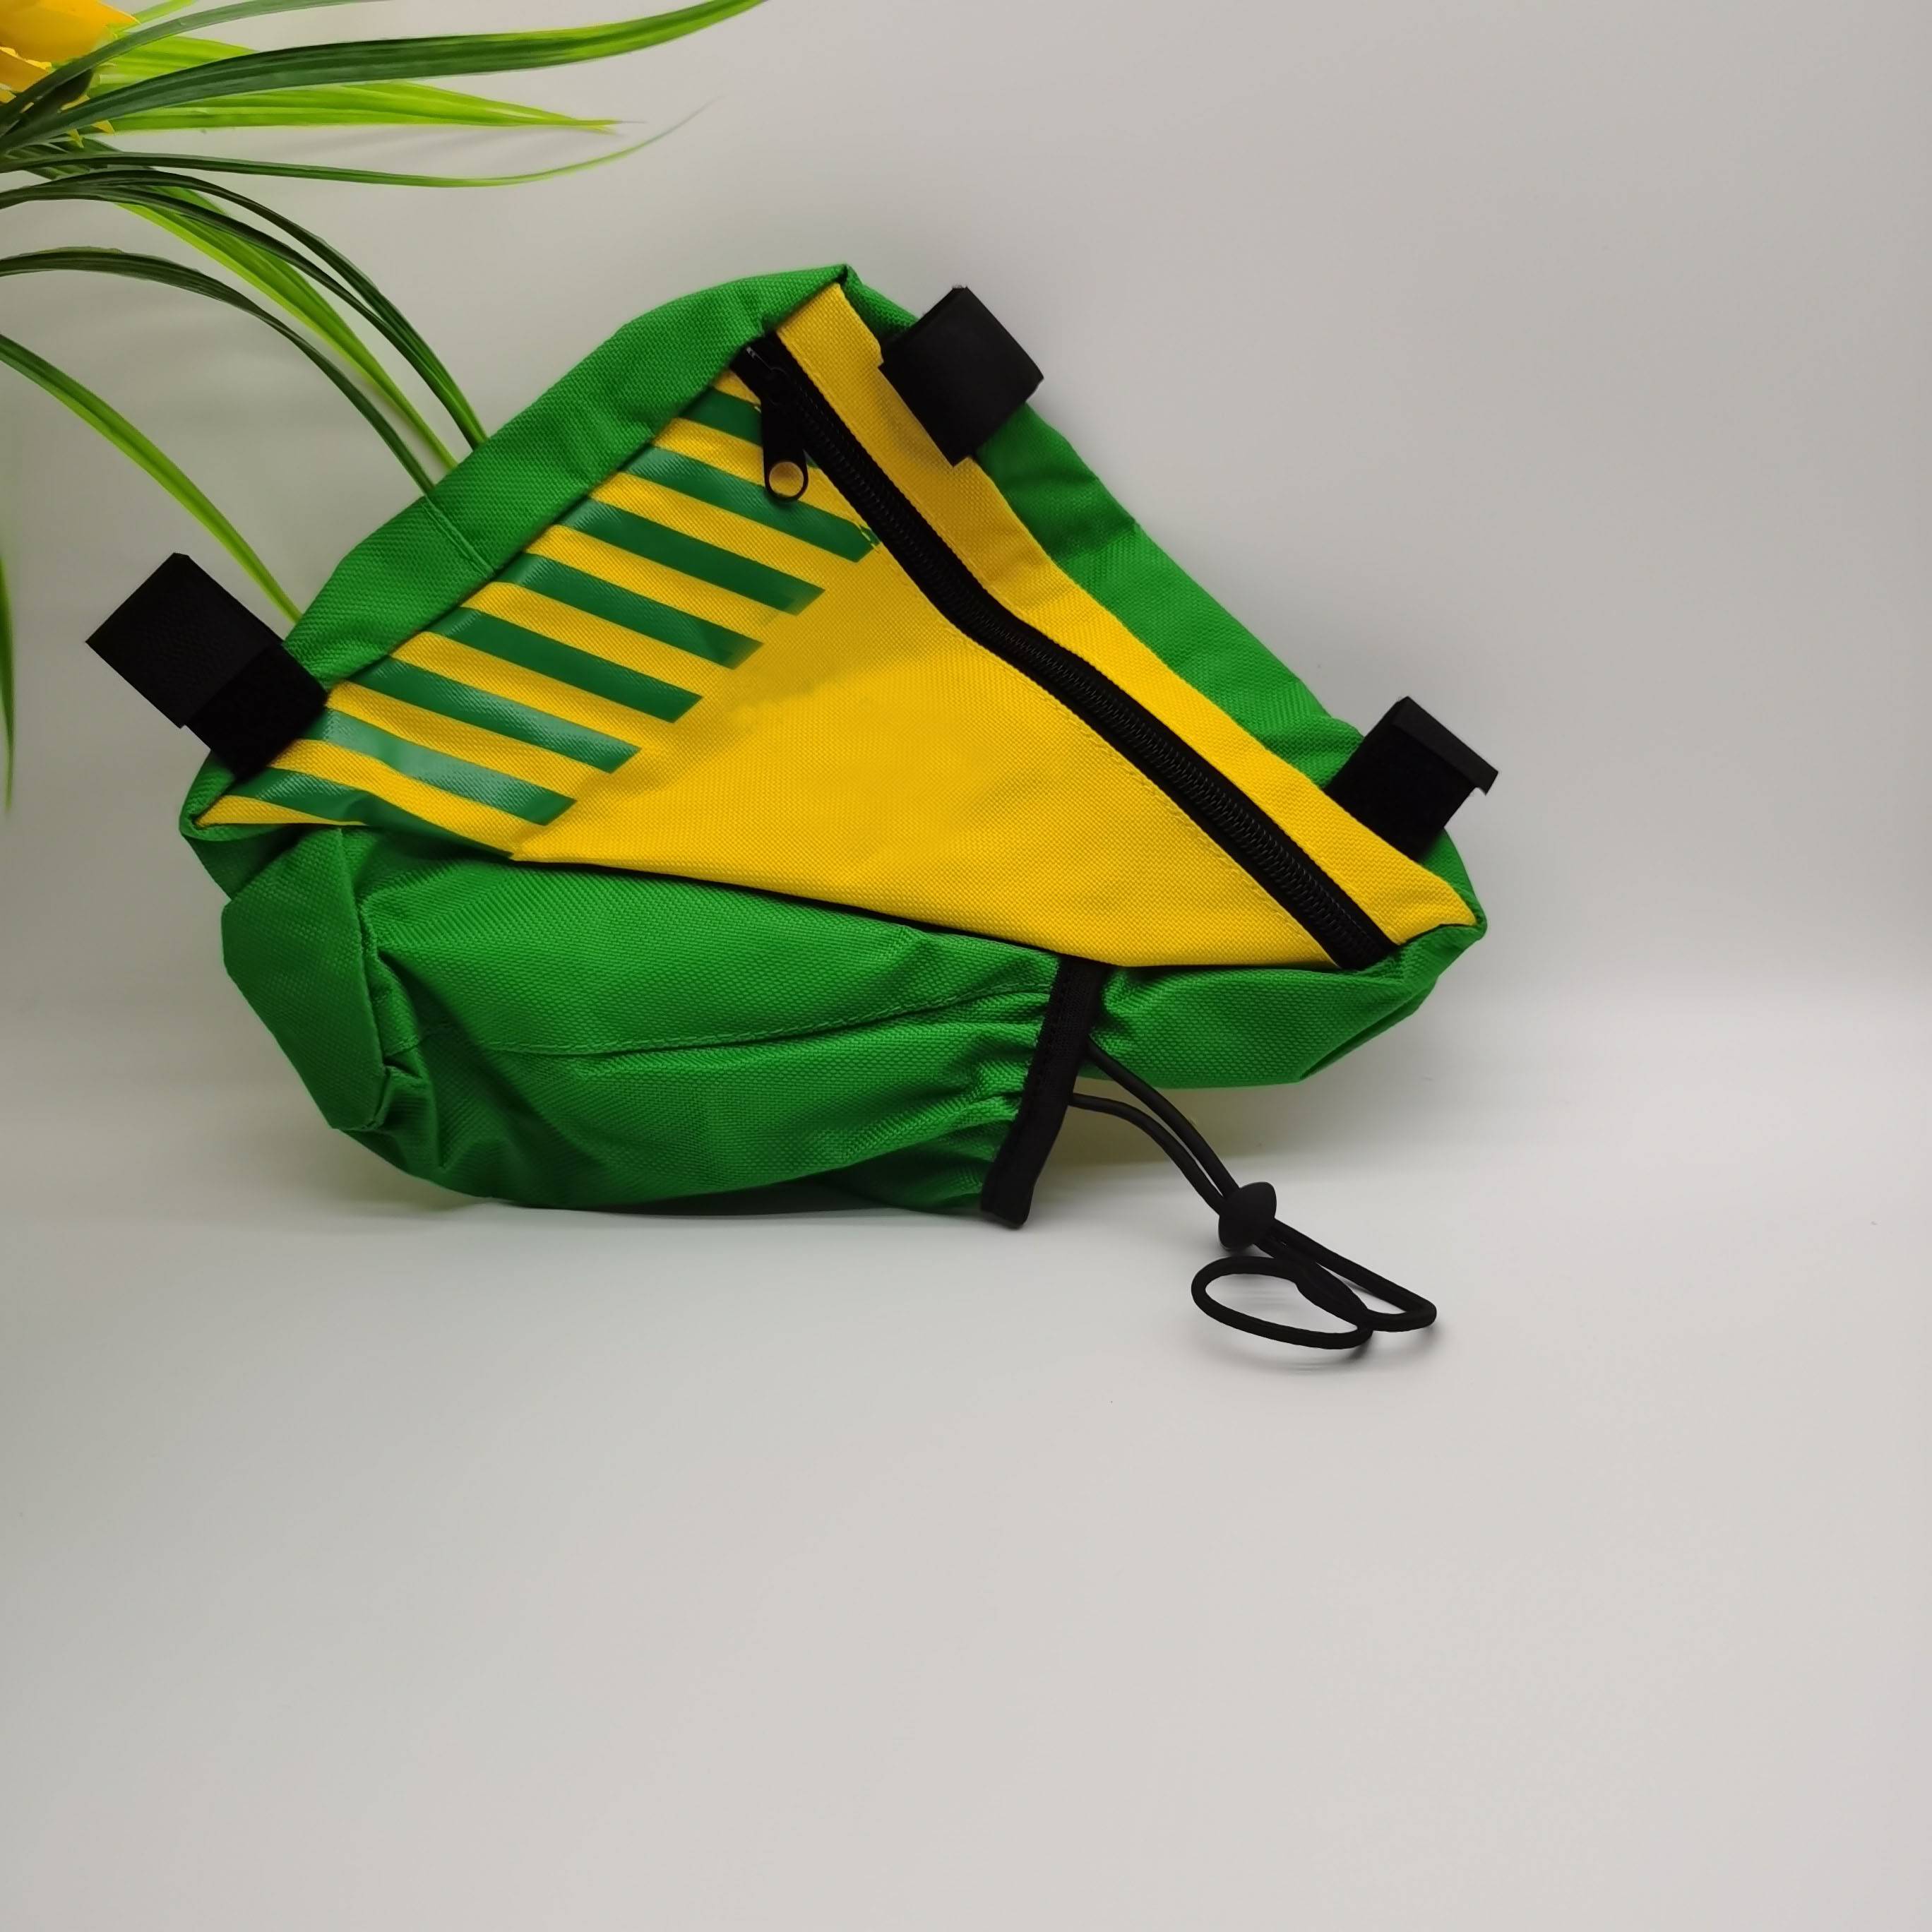 Vivibetter-waterproof bike bag in camflage 005